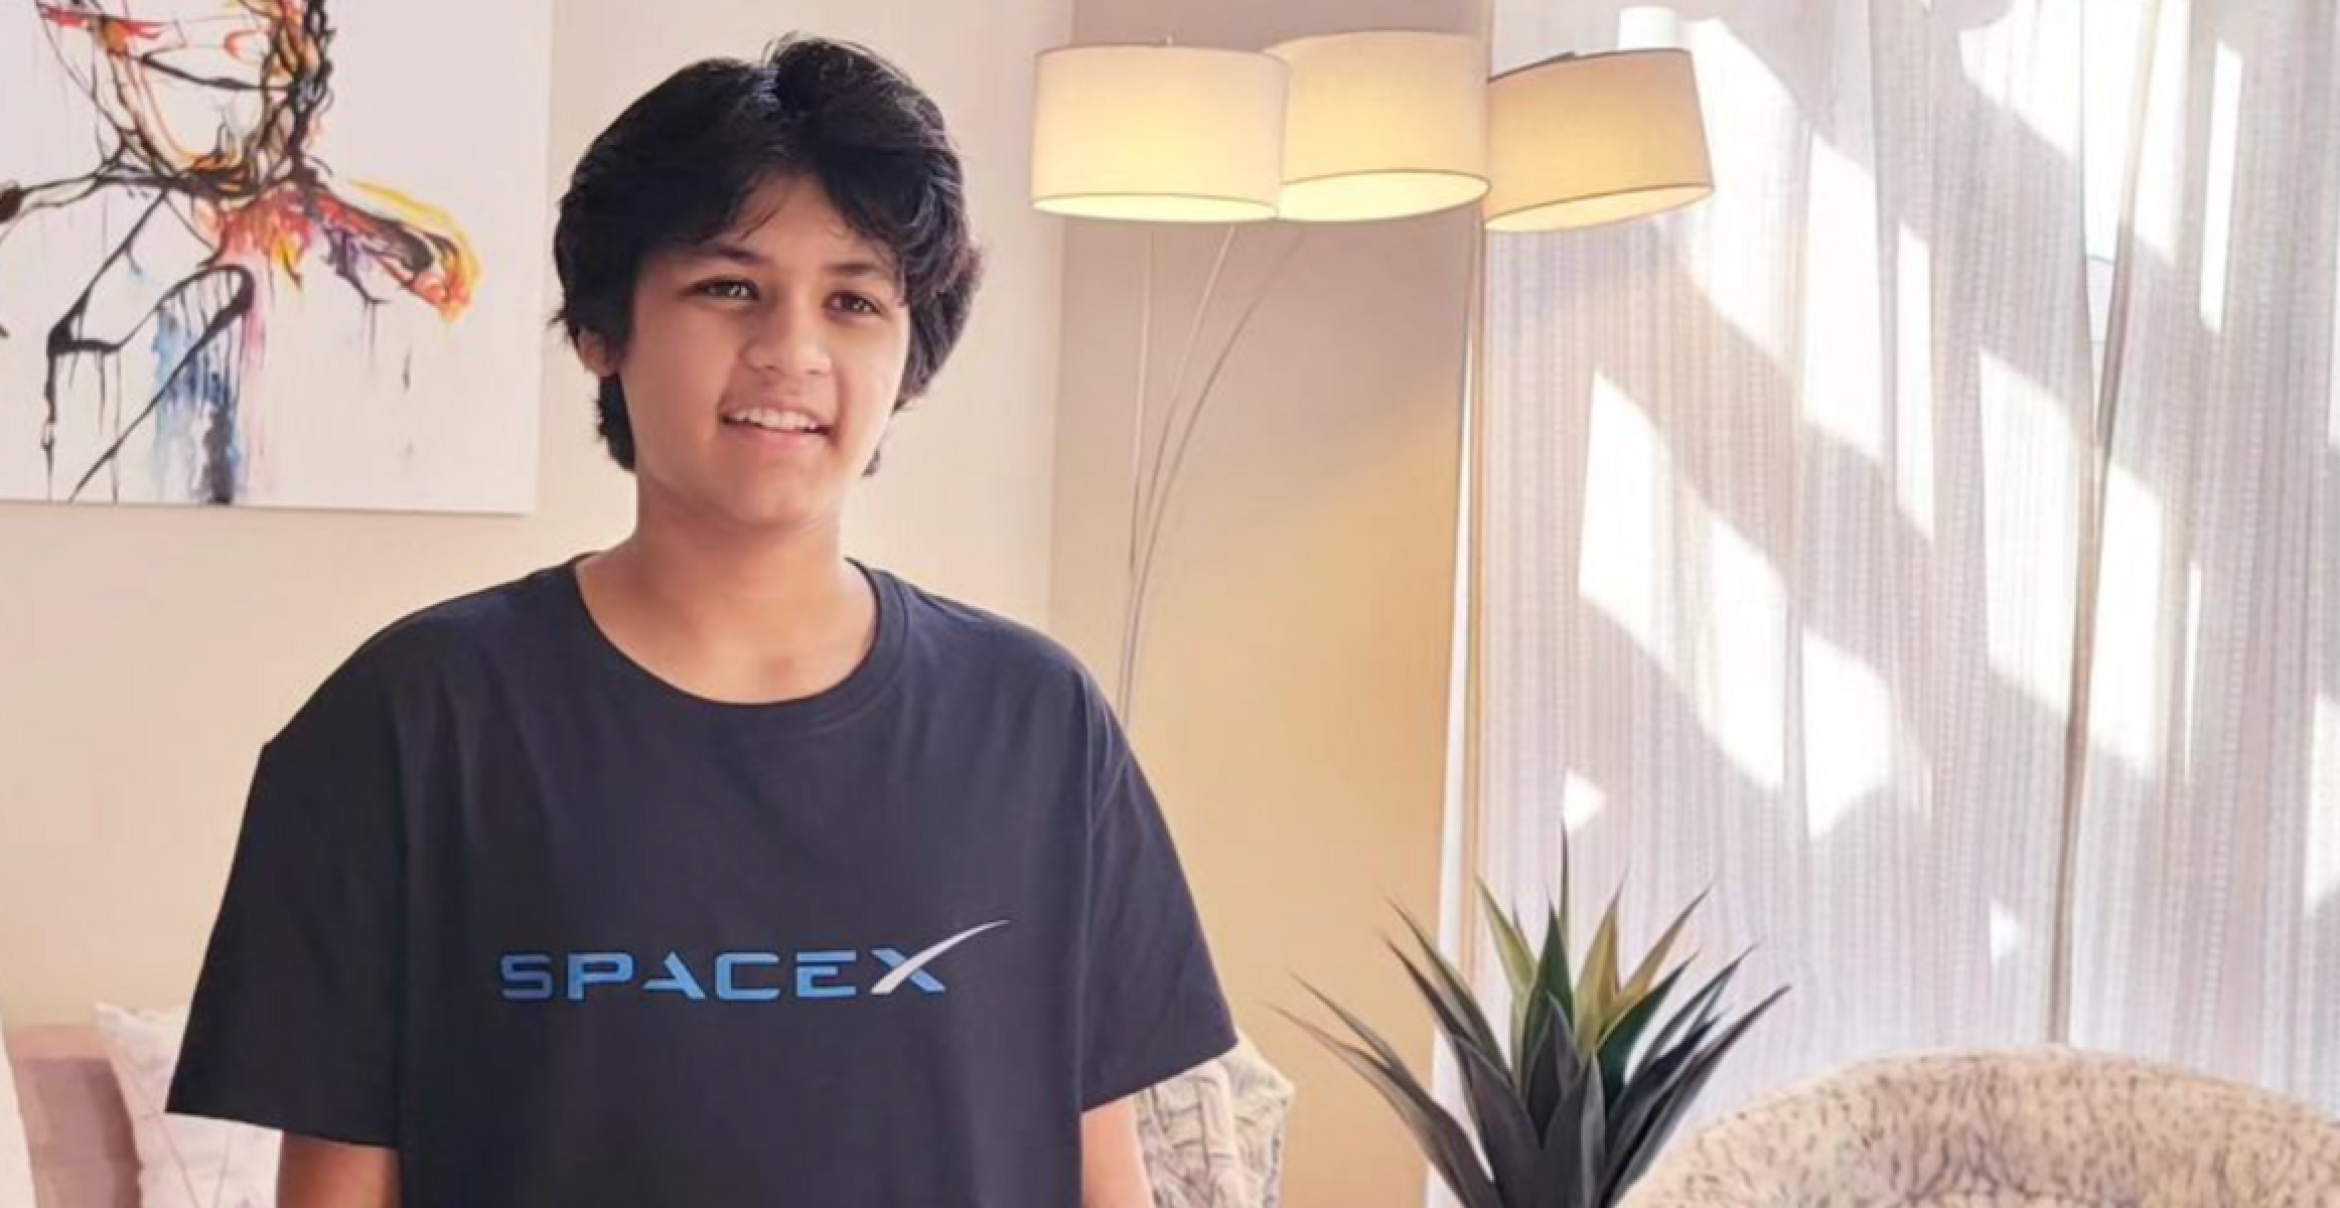 California Dreamin‘: 14-jähriger Uniabsolvent wird von SpaceX eingestellt